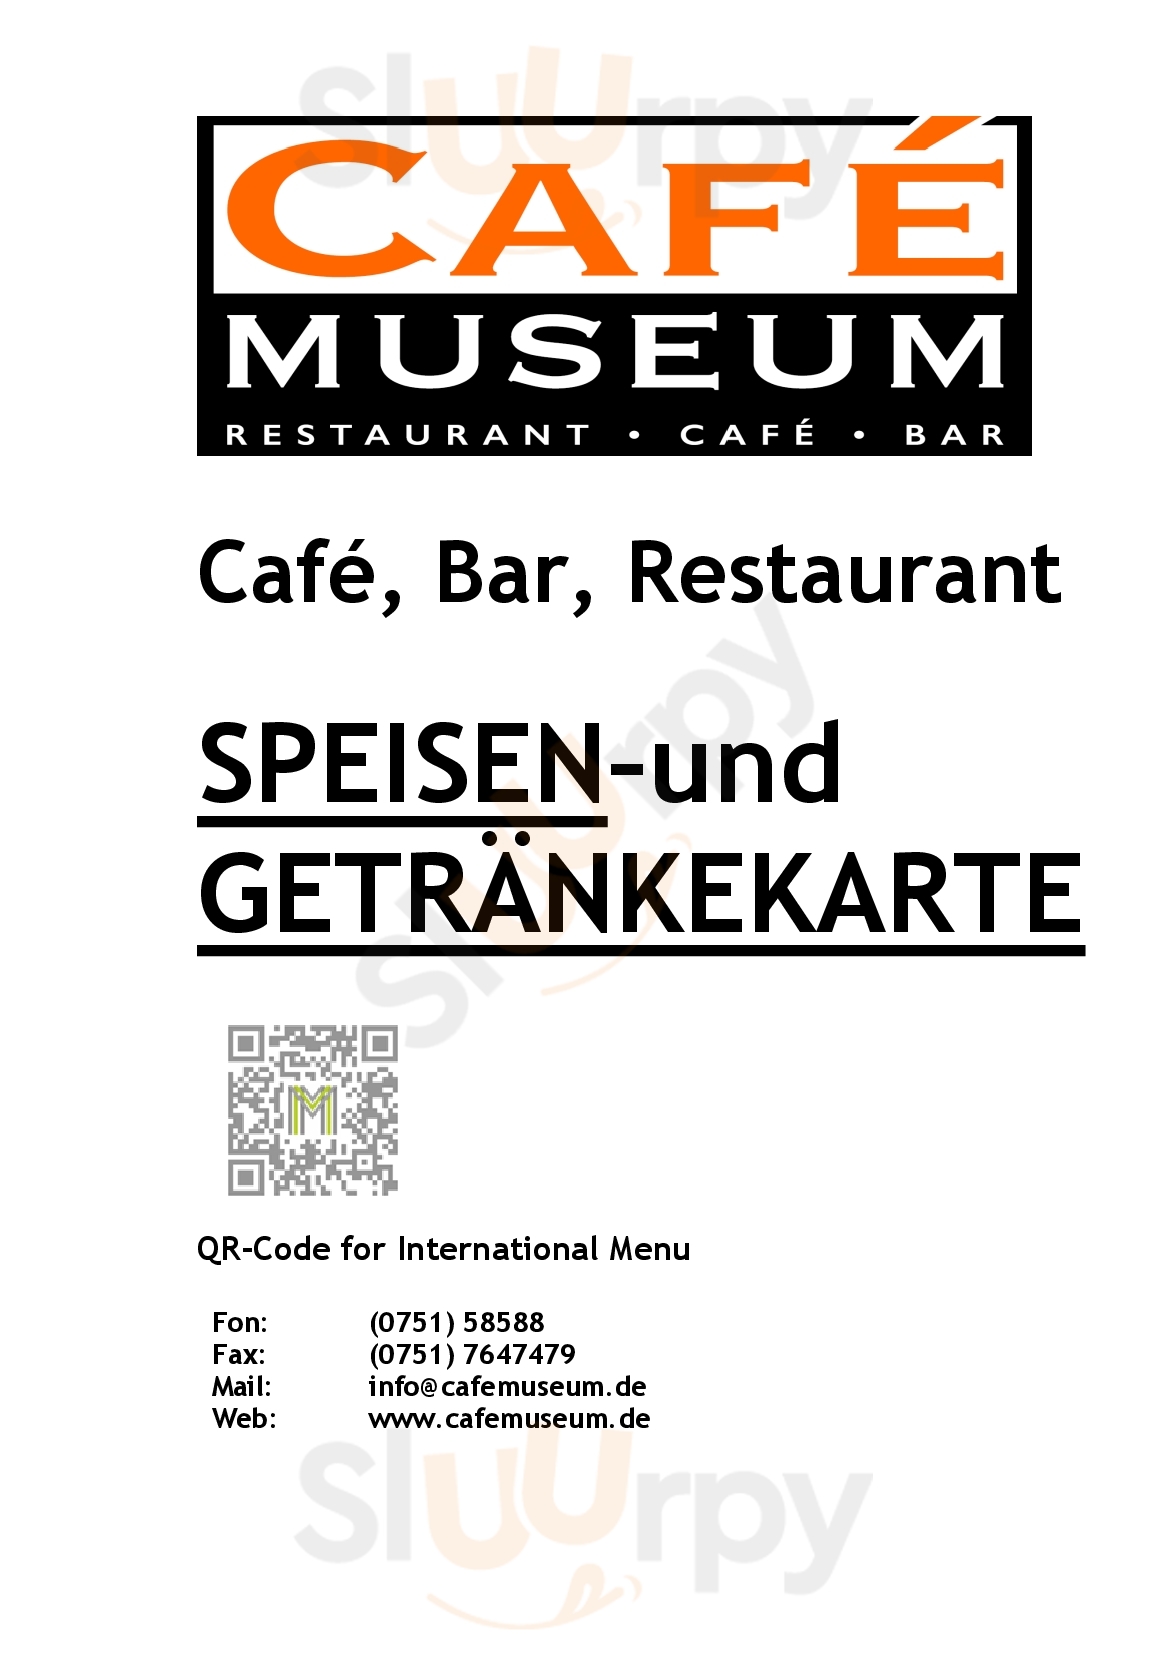 Café Museum Weingarten Menu - 1